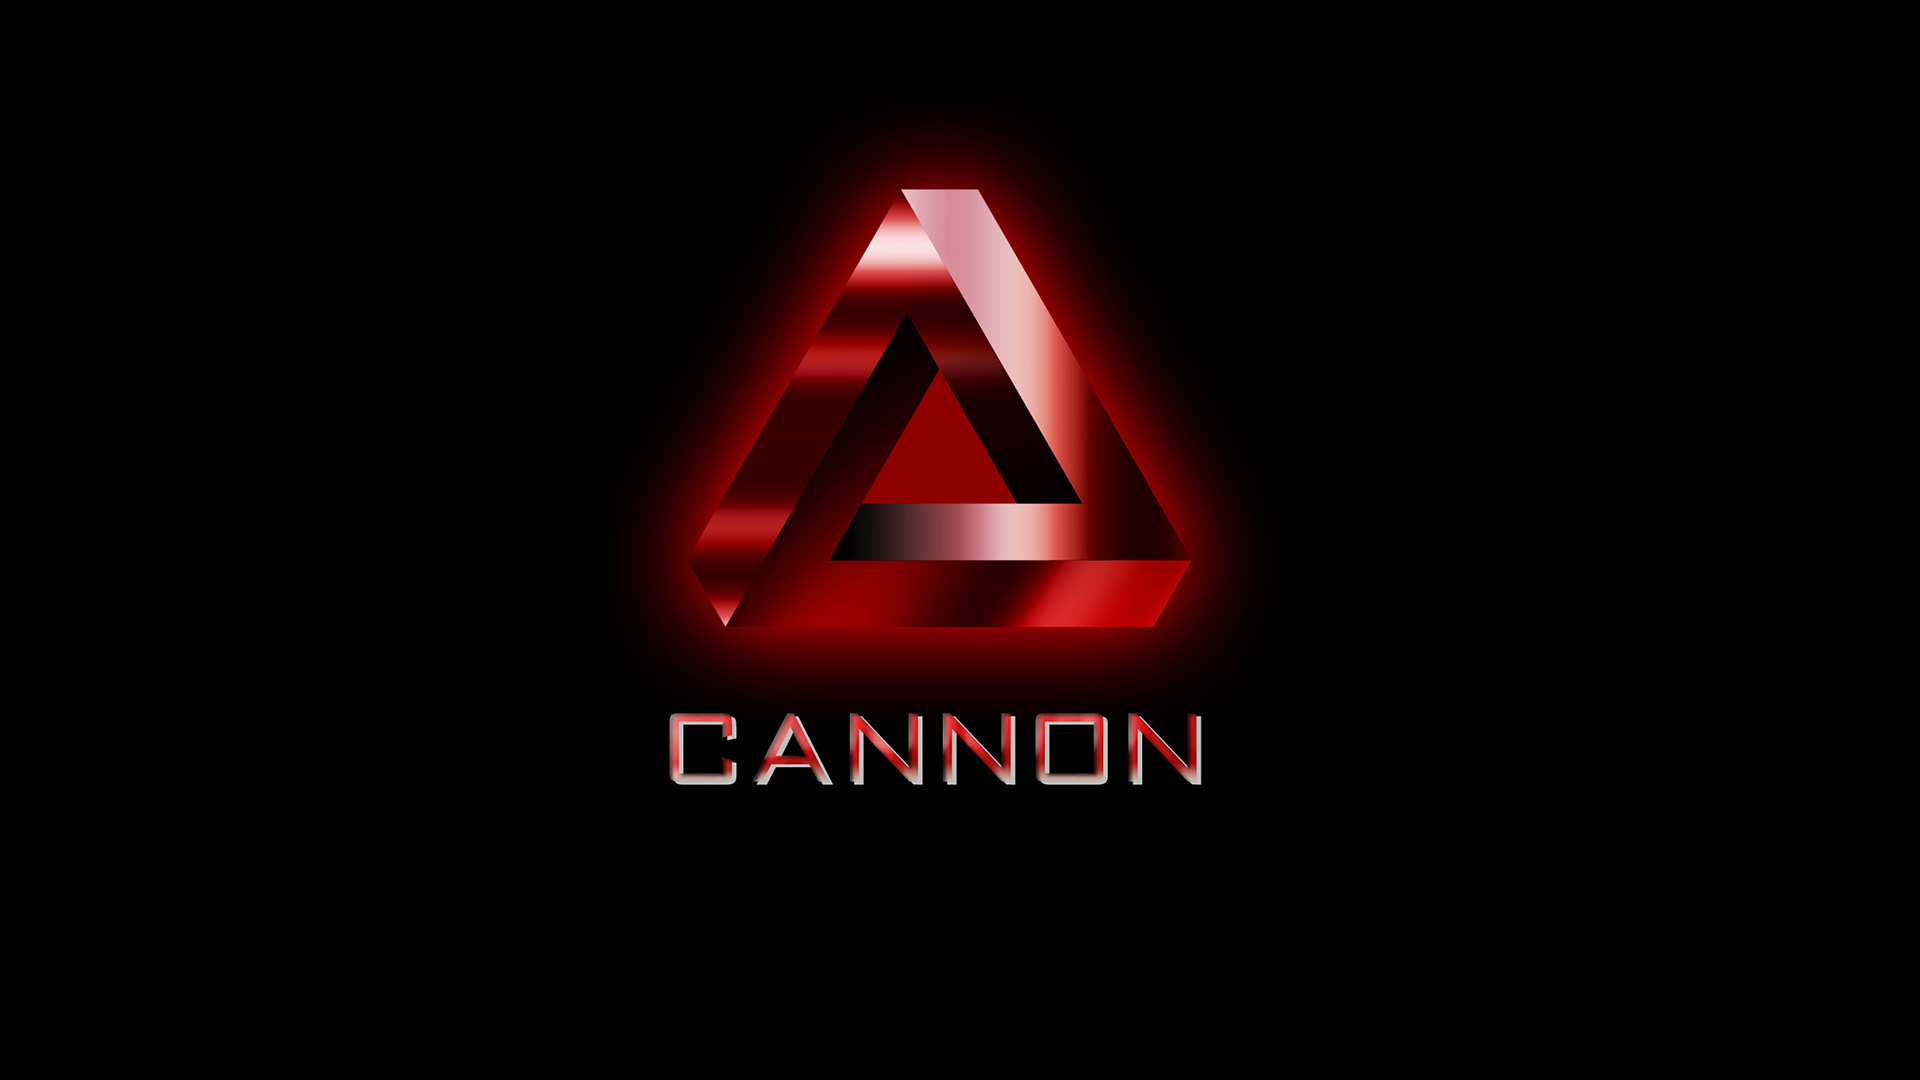 Cannon, la mítica productora de cine, regresa Comeback casposo